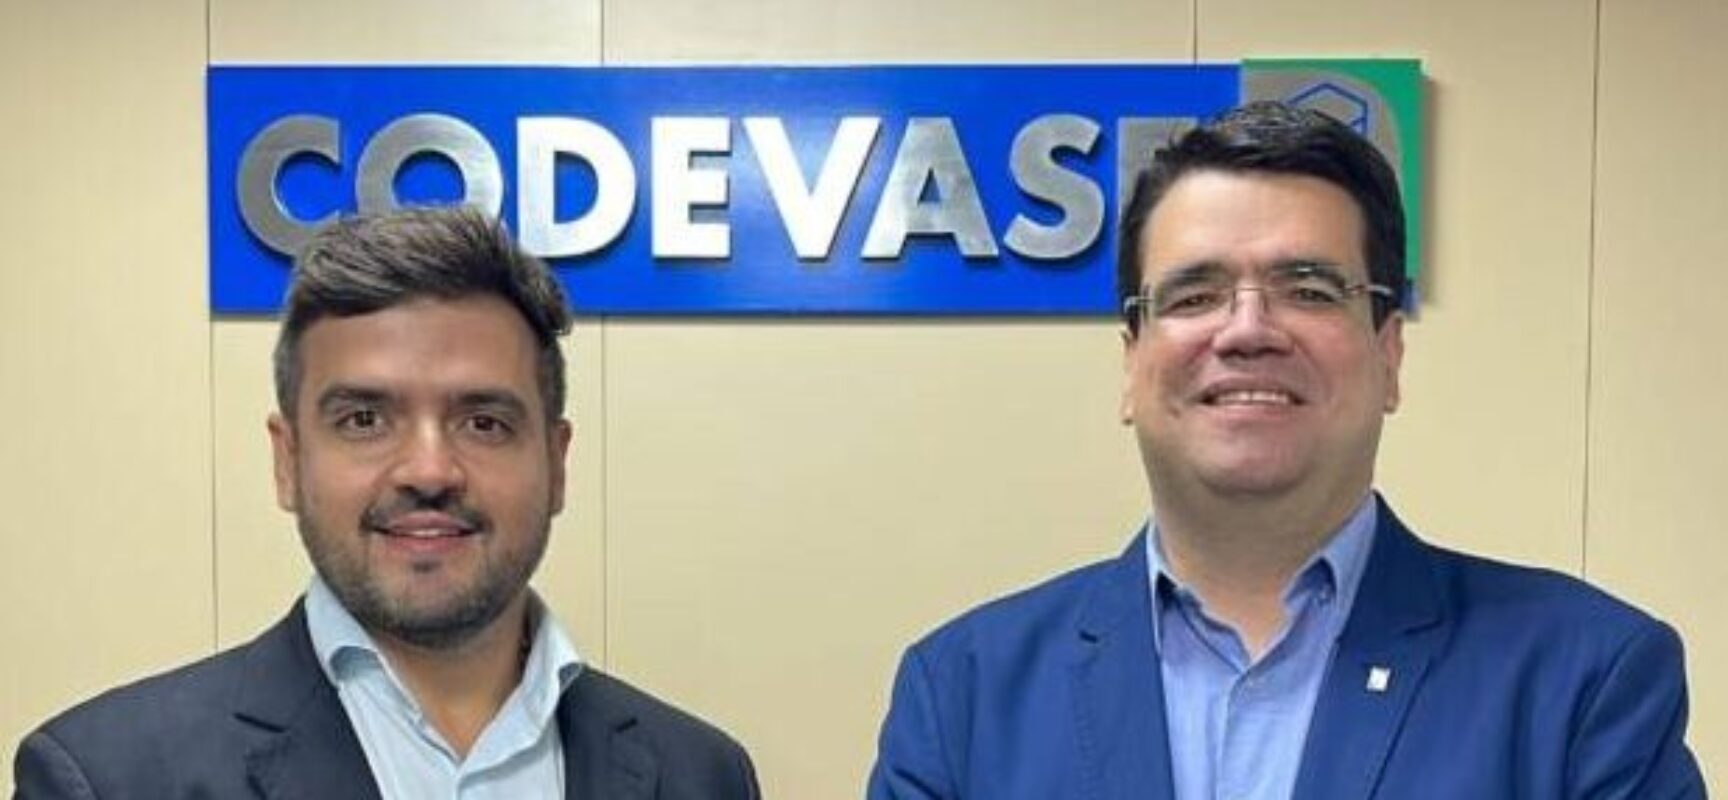 Valderico Junior vai garantir agenda de desenvolvimento em Ilhéus, afirma Vivaldo Mendonça